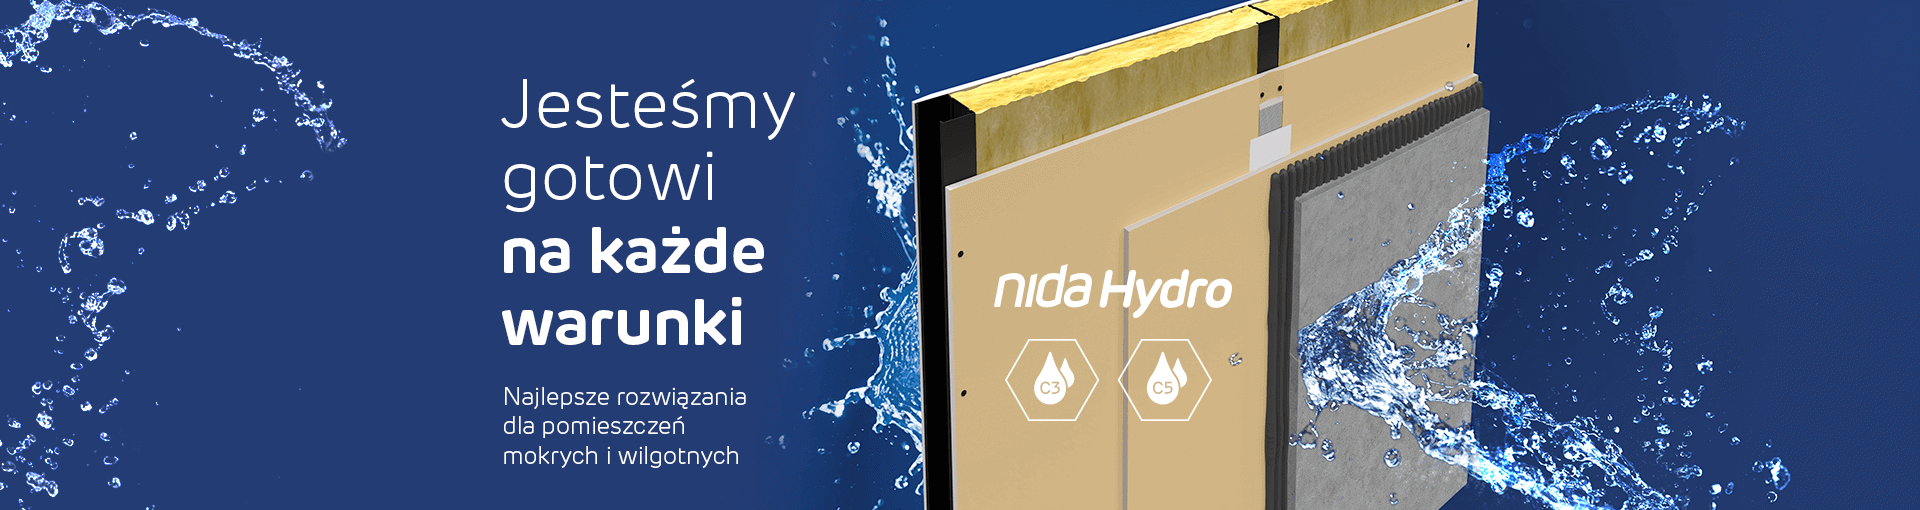 Baner z tekstem Jesteśmy gotowi na każde warunki. Najlepsze rozwiązania do pomieszczeń mokrych i wilgotnych Nida Hydro. Render z wykorzystaniem płyty Nida Hydro.